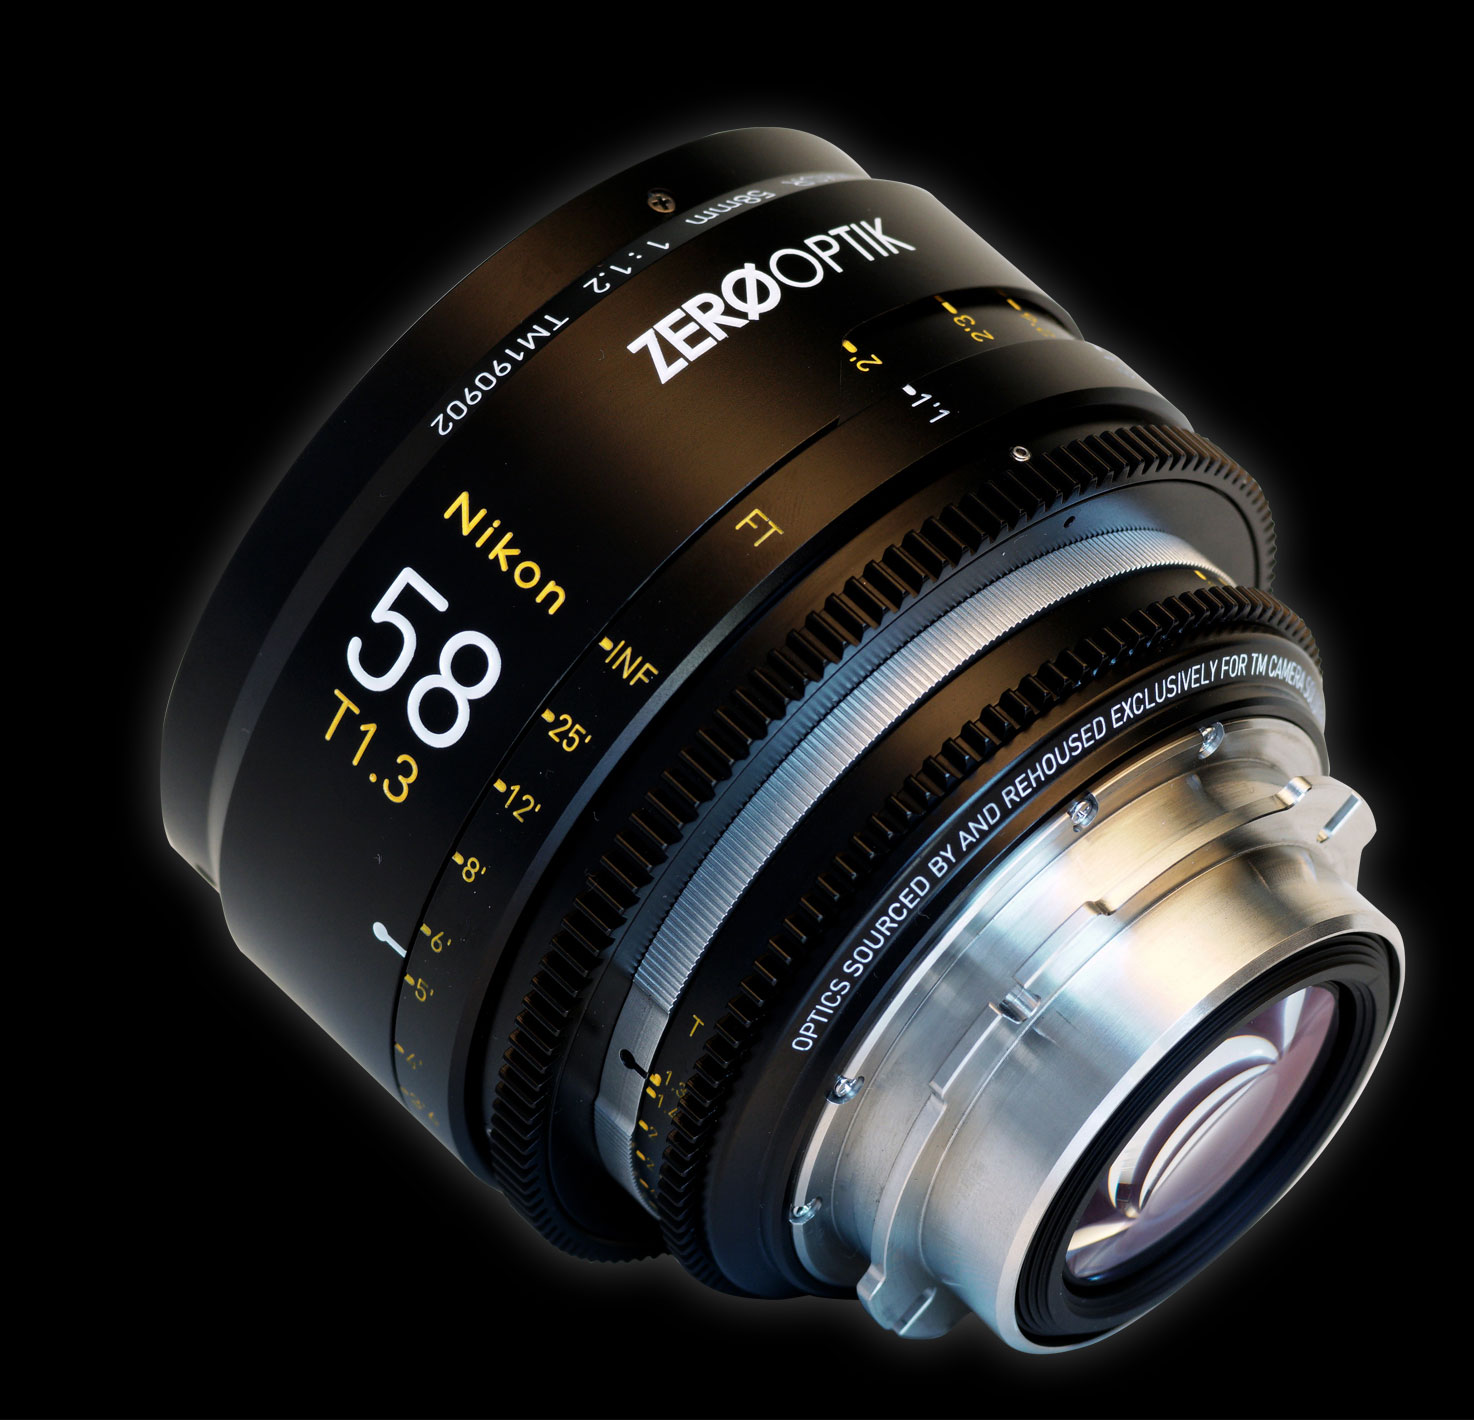 適切な価格 Noct-NIKKOR F1.2 58mm レンズ(単焦点)